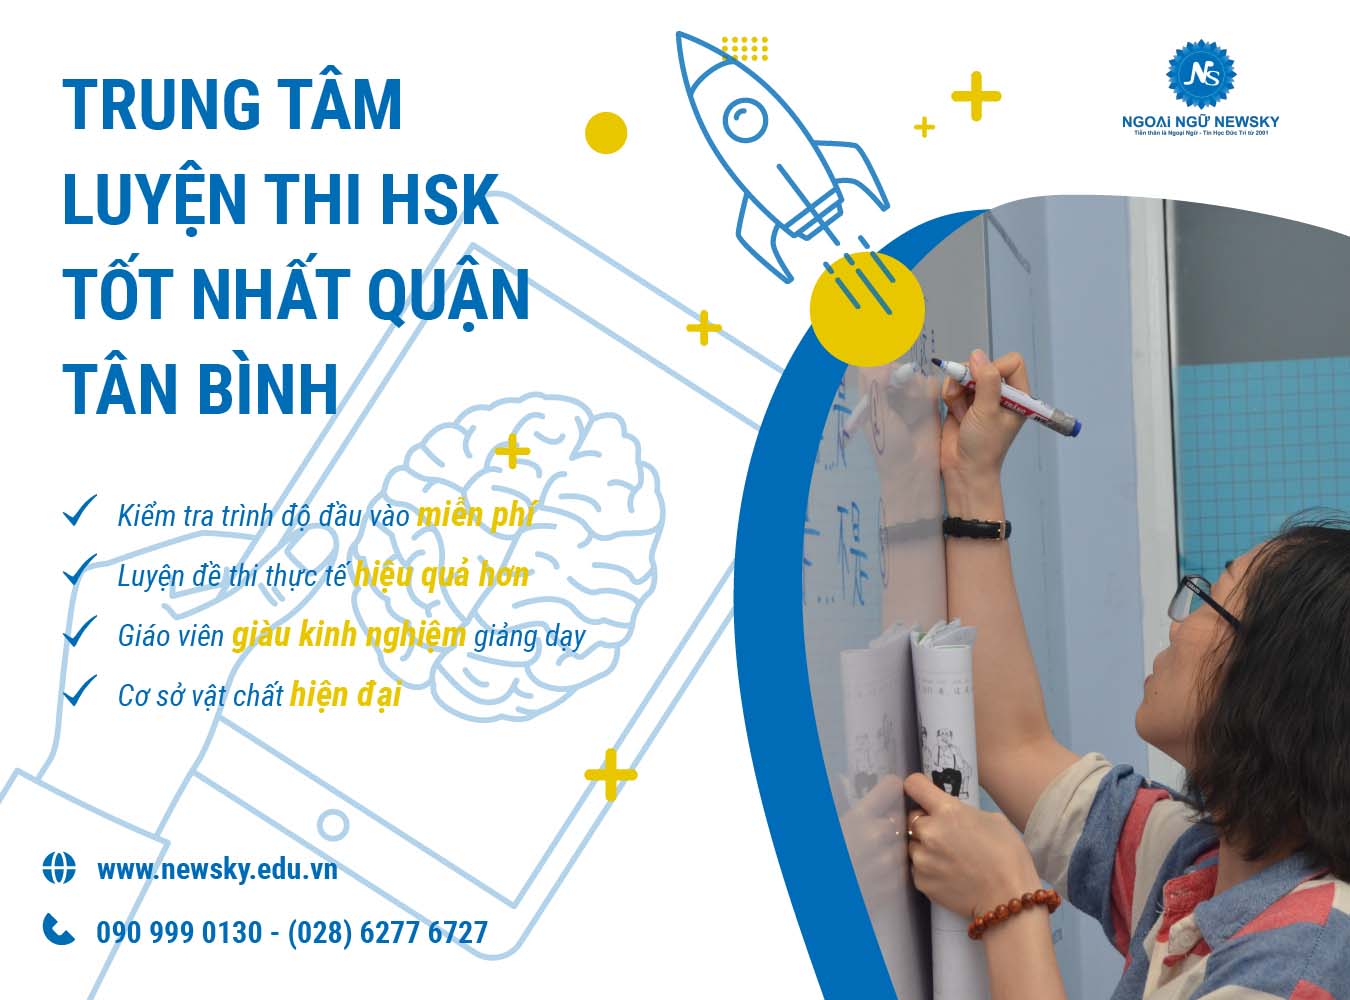 Trung tâm luyện thi HSK tốt nhất quận Tân Bình